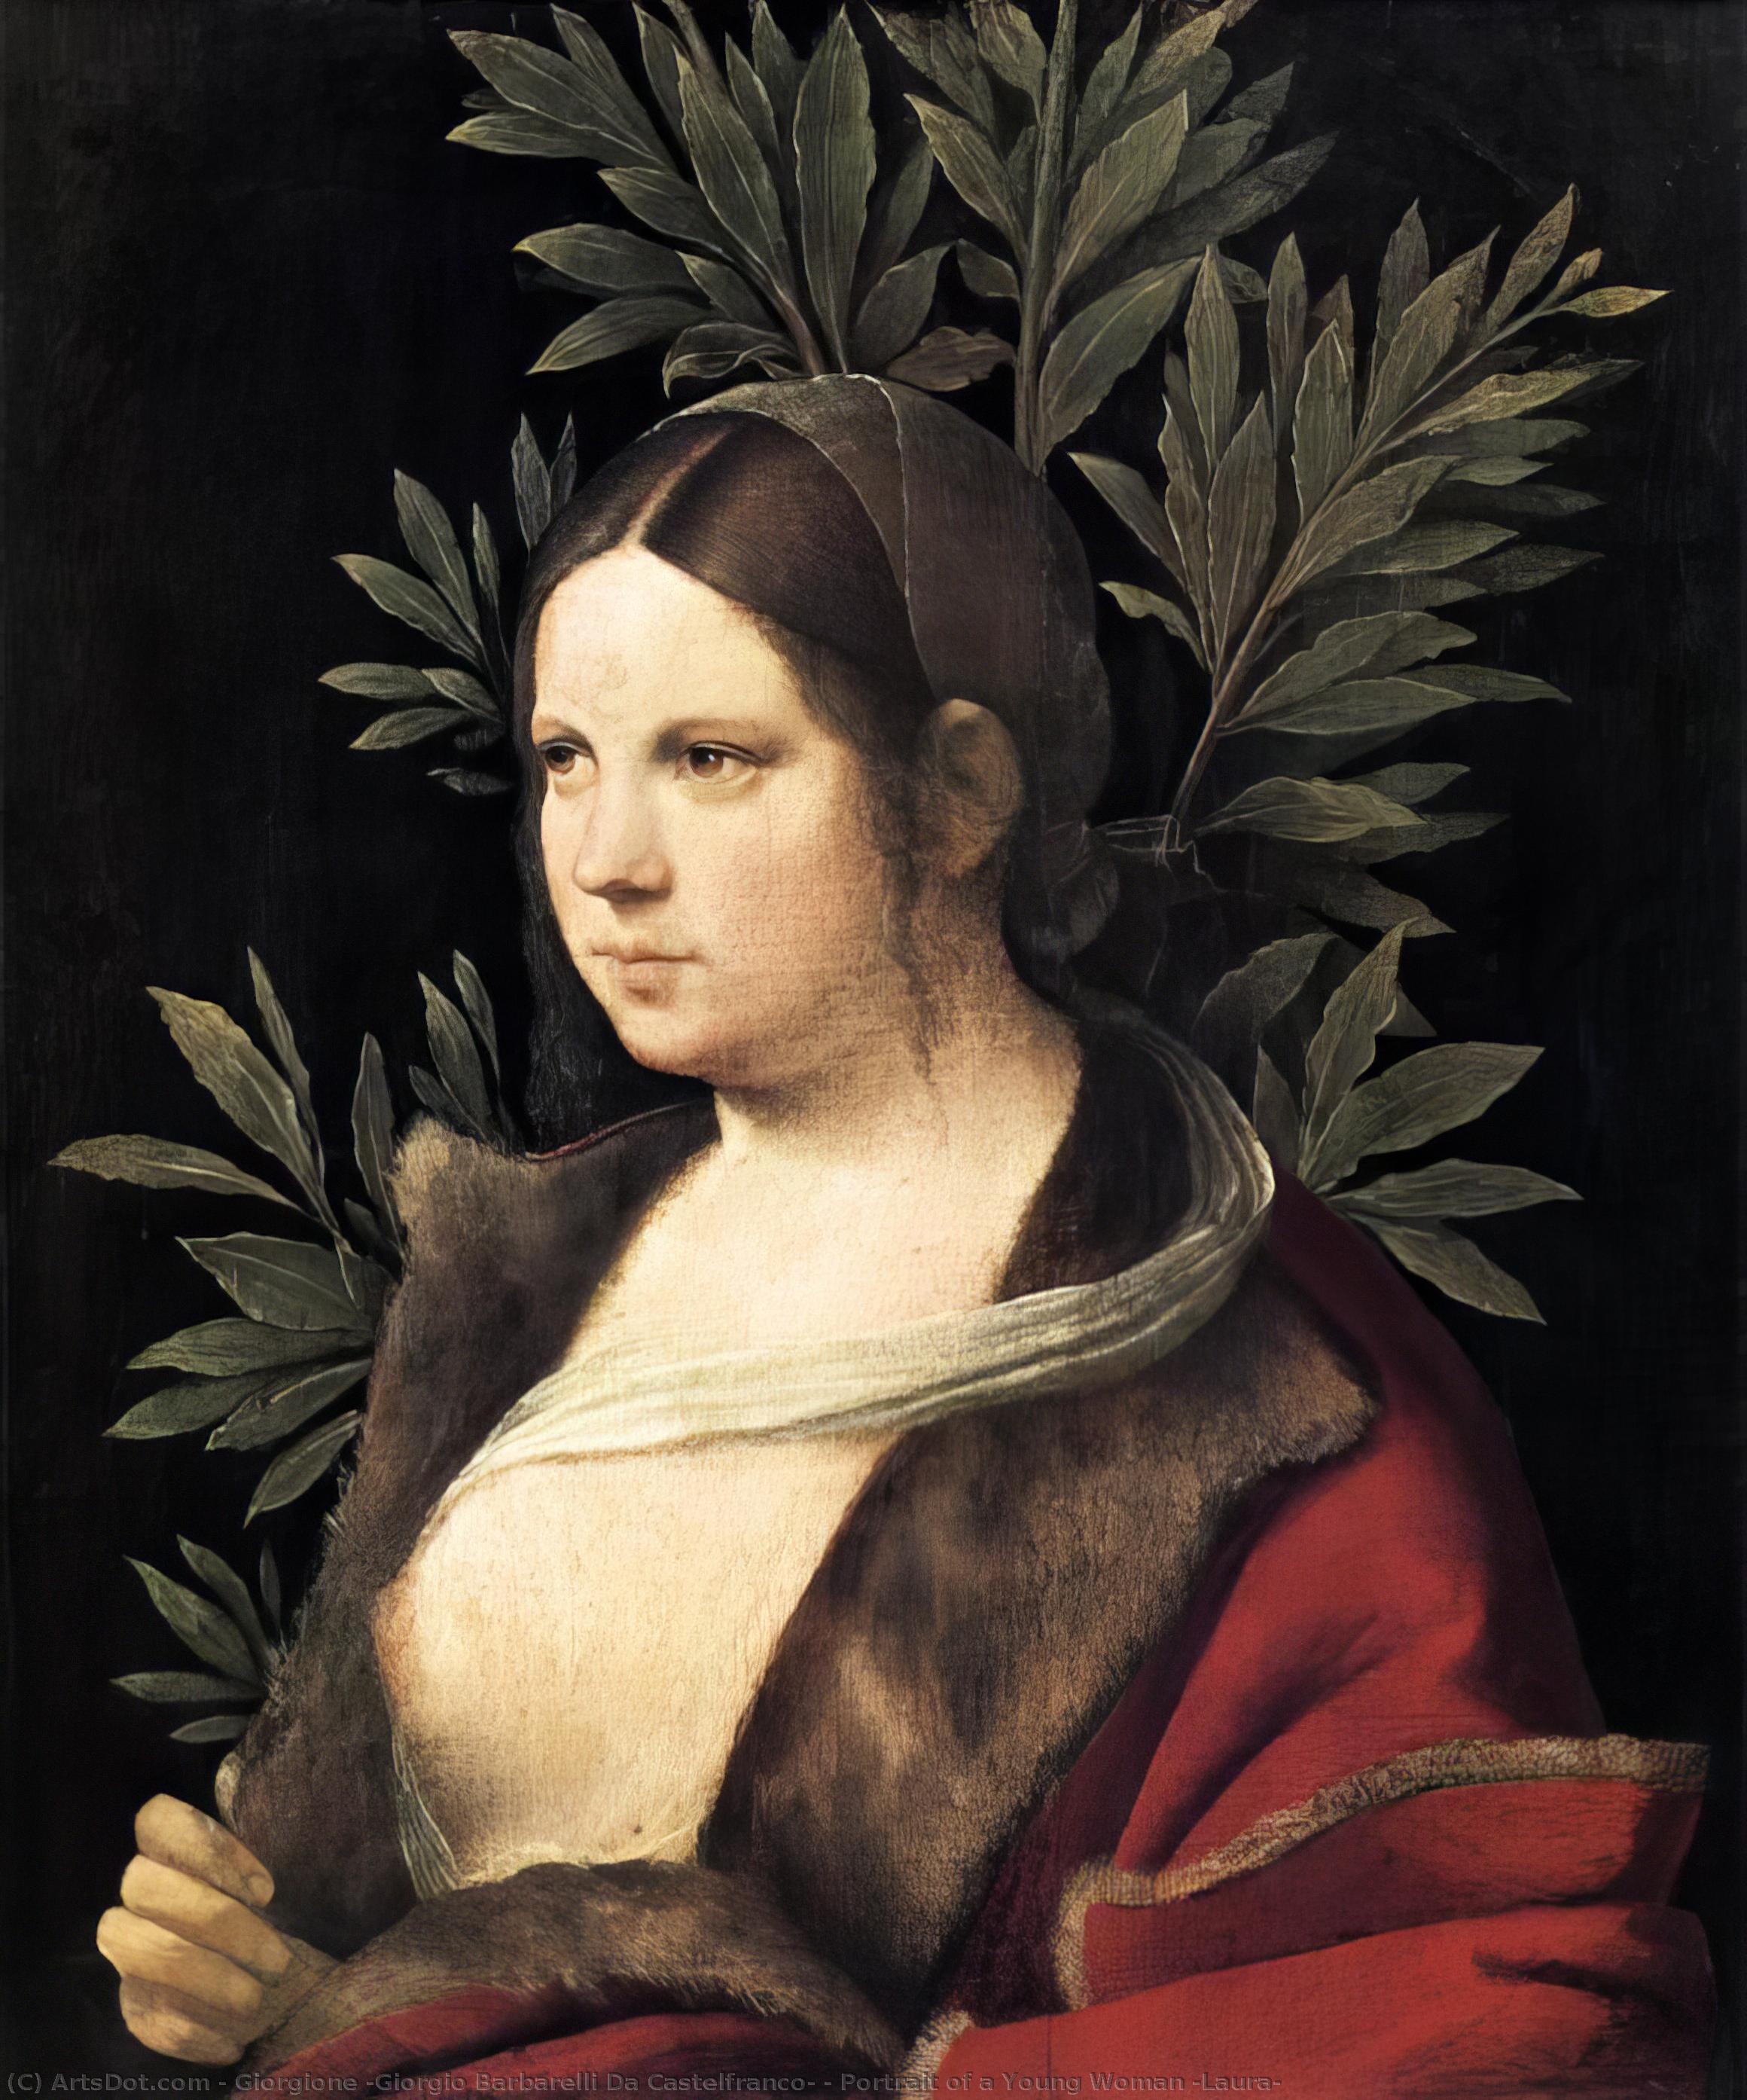 WikiOO.org - Encyclopedia of Fine Arts - Maleri, Artwork Giorgione (Giorgio Barbarelli Da Castelfranco) - Portrait of a Young Woman (Laura)